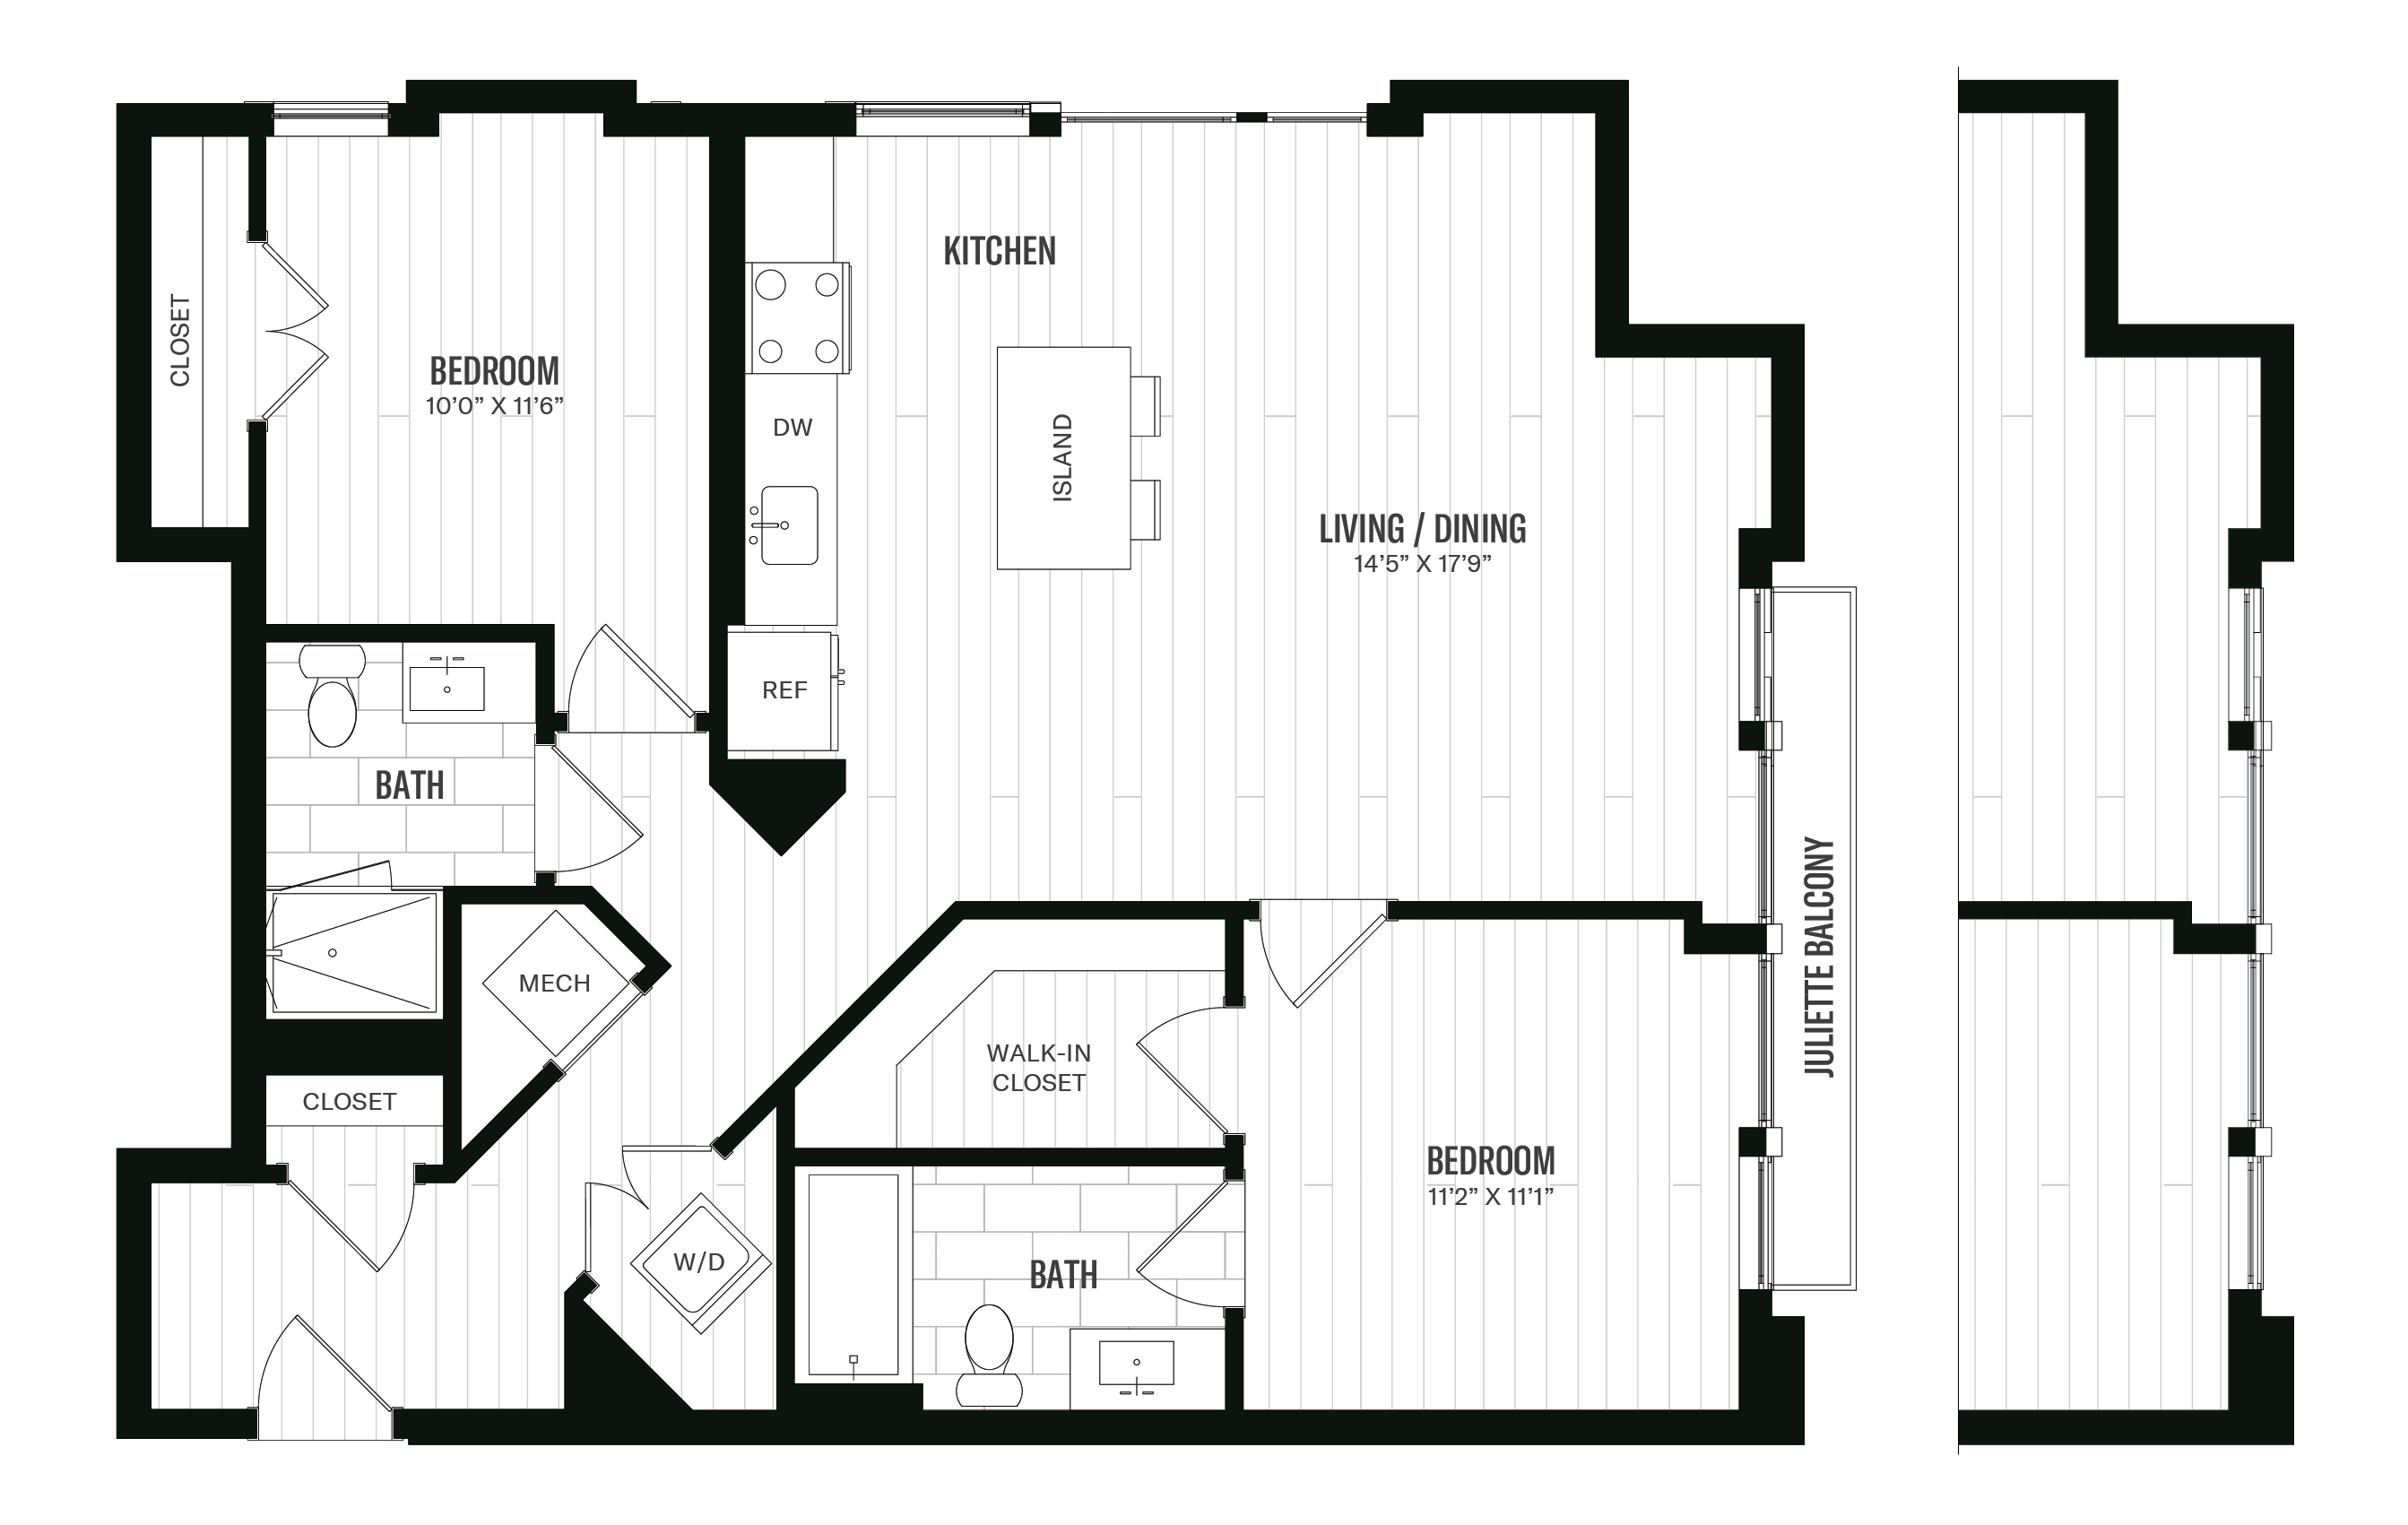 Floorplan image of unit 506